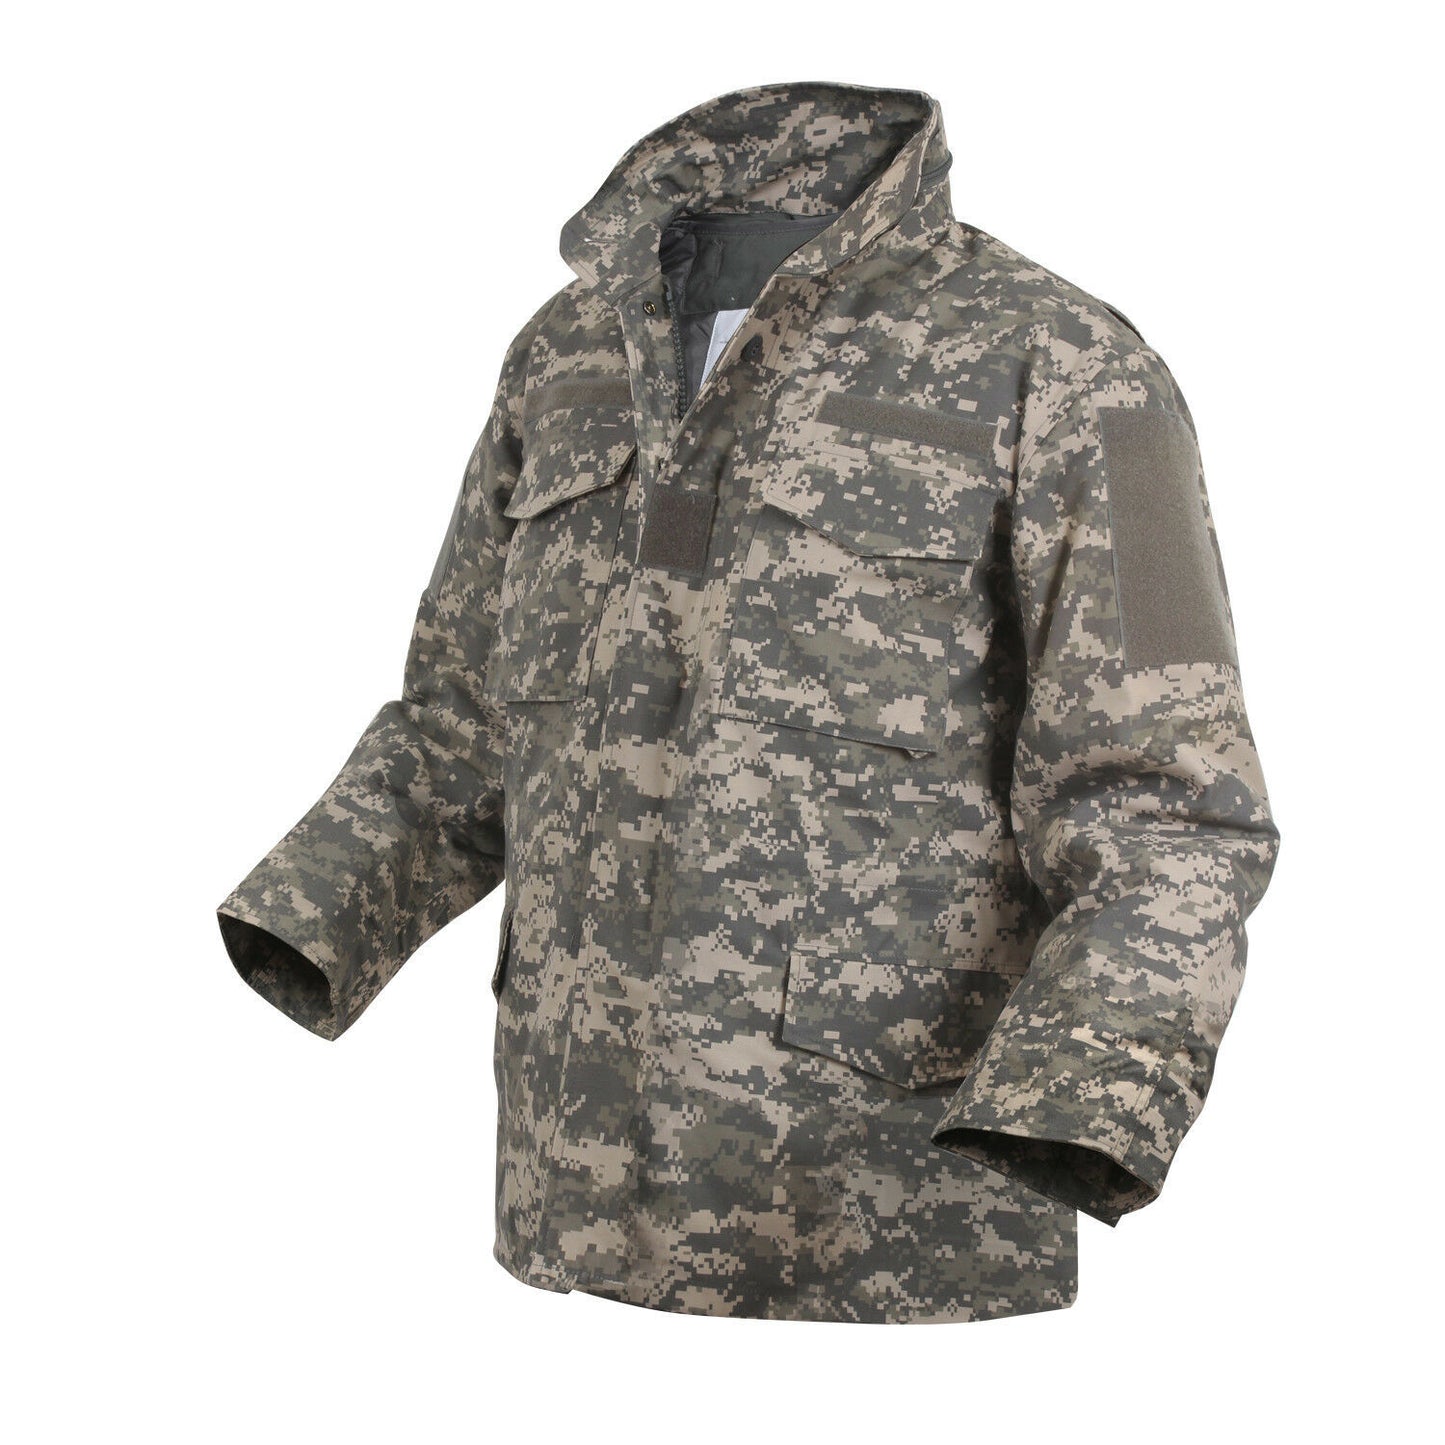 Rothco ACU Digital Camo M-65 Field Jacket